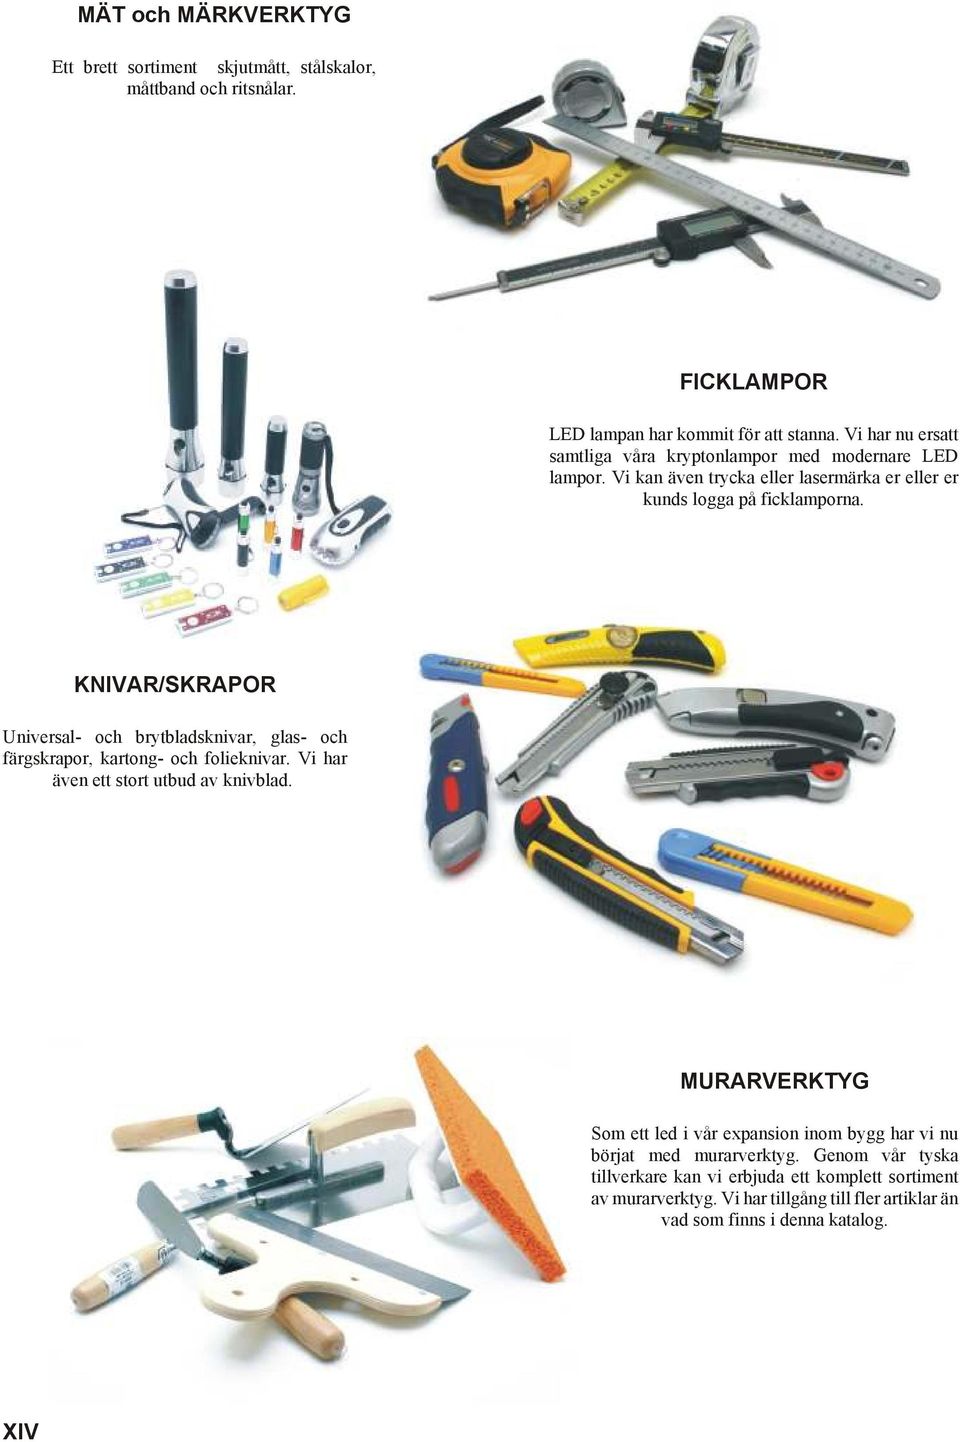 KNIVAR/SKRAPOR Universal- och brytbladsknivar, glas- och färgskrapor, kartong- och folieknivar. Vi har även ett stort utbud av knivblad.